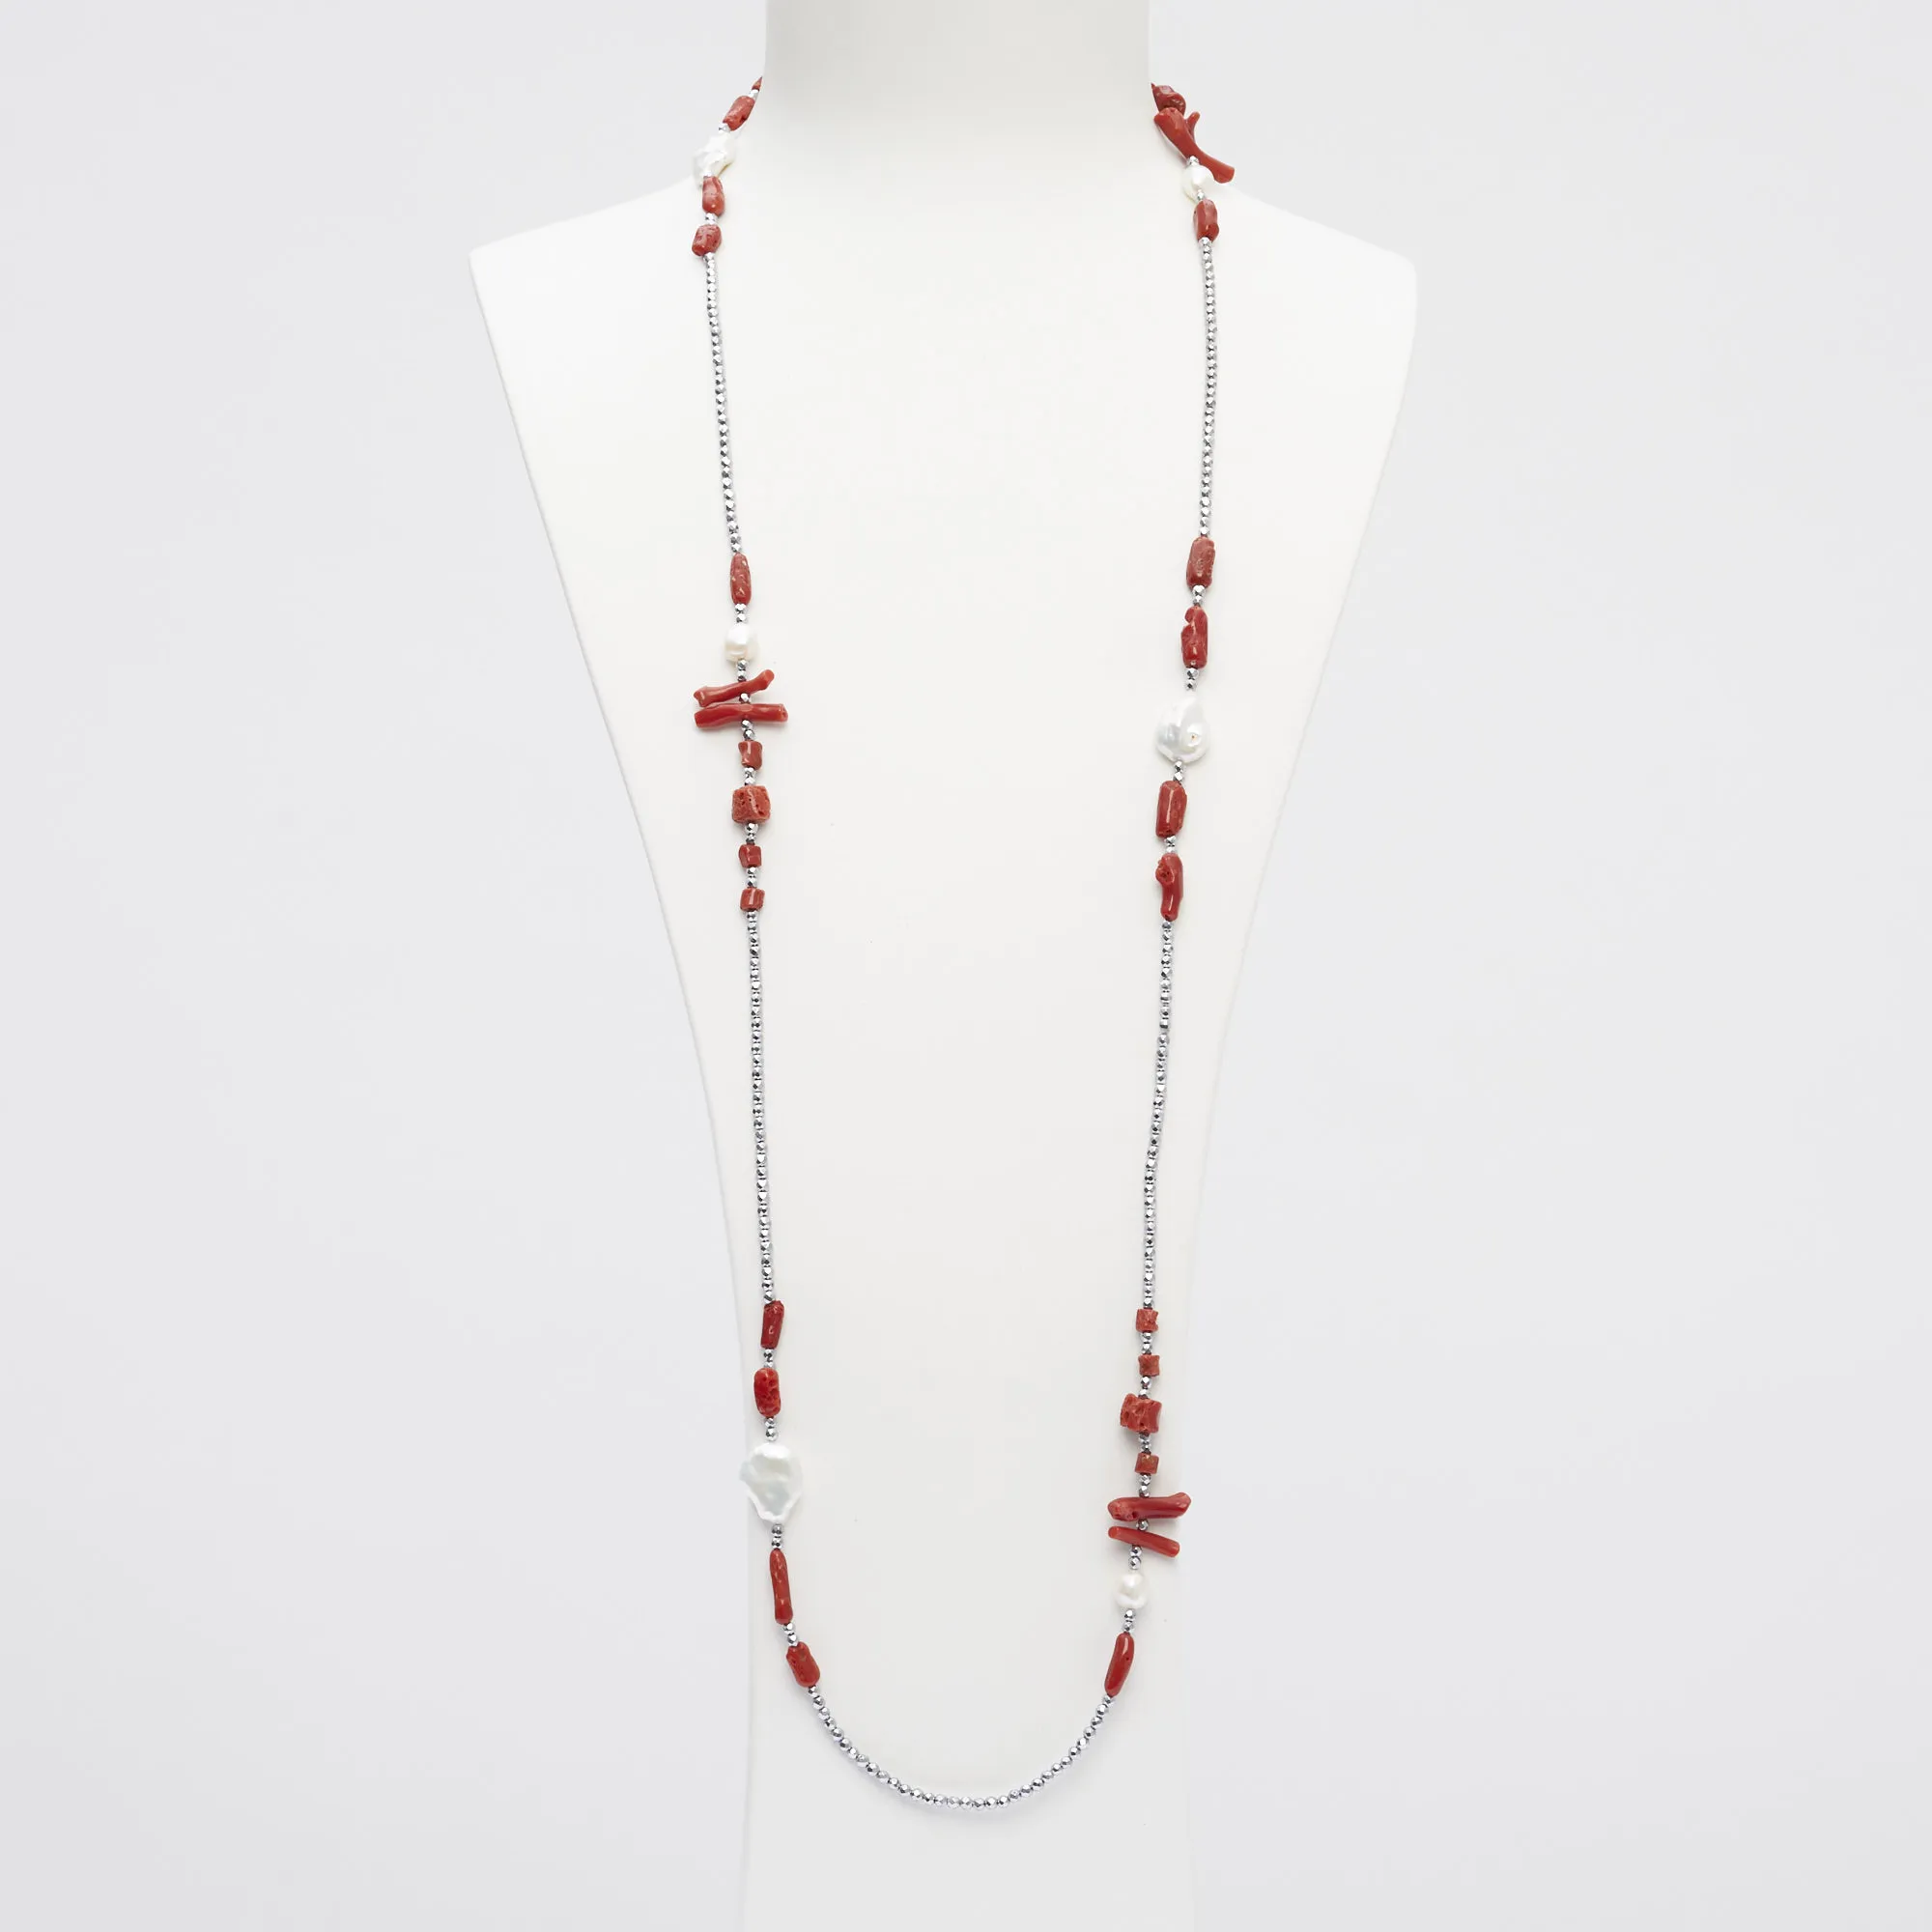 Collana lunga con forme in Corallo rosso, Perle di fiume ed Ematite